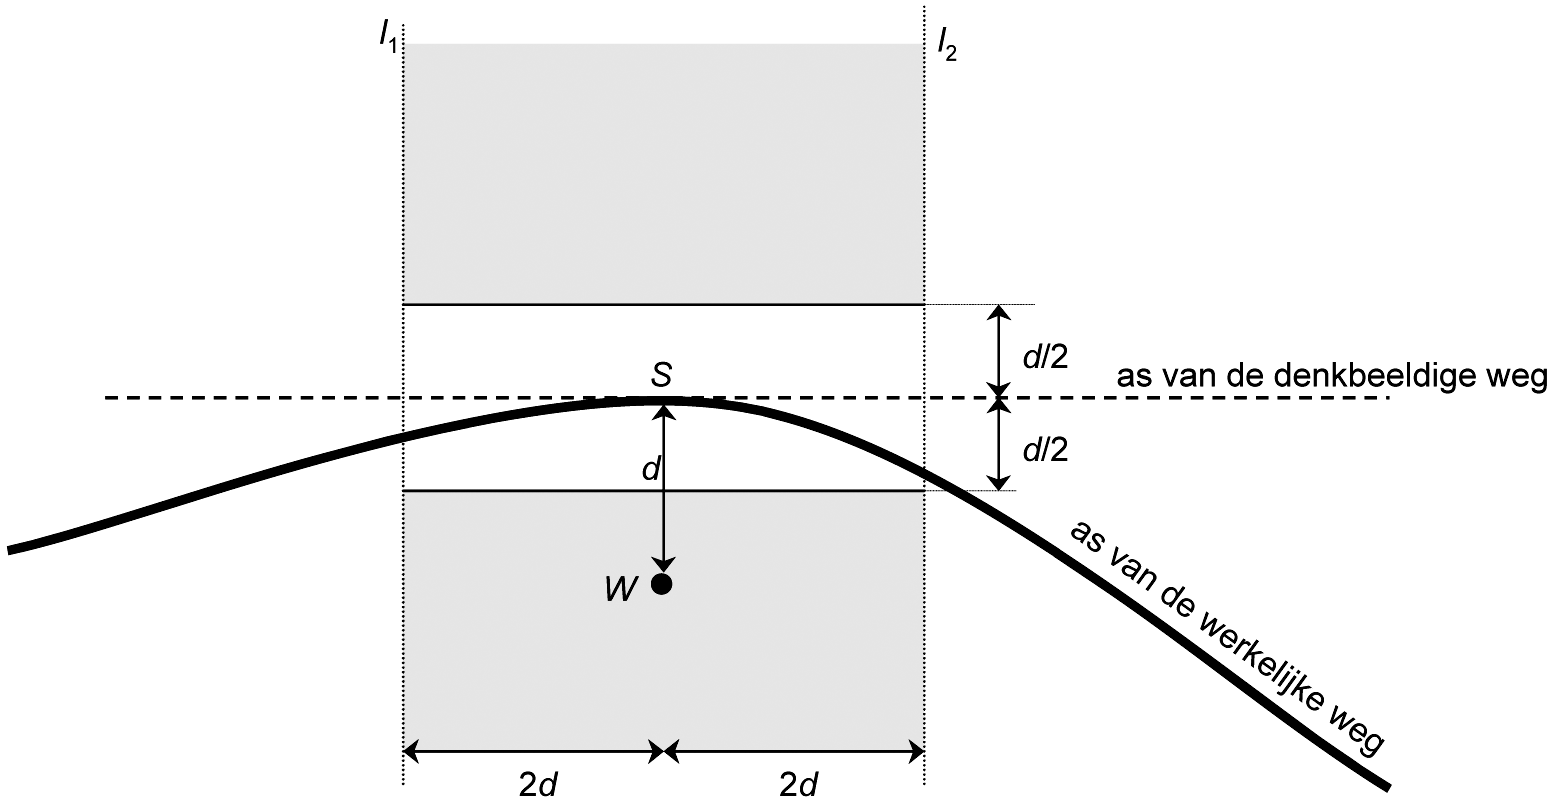 Figuur 1.1 Horizontale projectie van het aandachtsgebied dat ten behoeve van de toetsing aan de toepassingsvoorwaarden wordt gedefinieerd. De onderbroken lijnen I1 en I2 vormen de begrenzinglijnen van het aandachtsgebied.